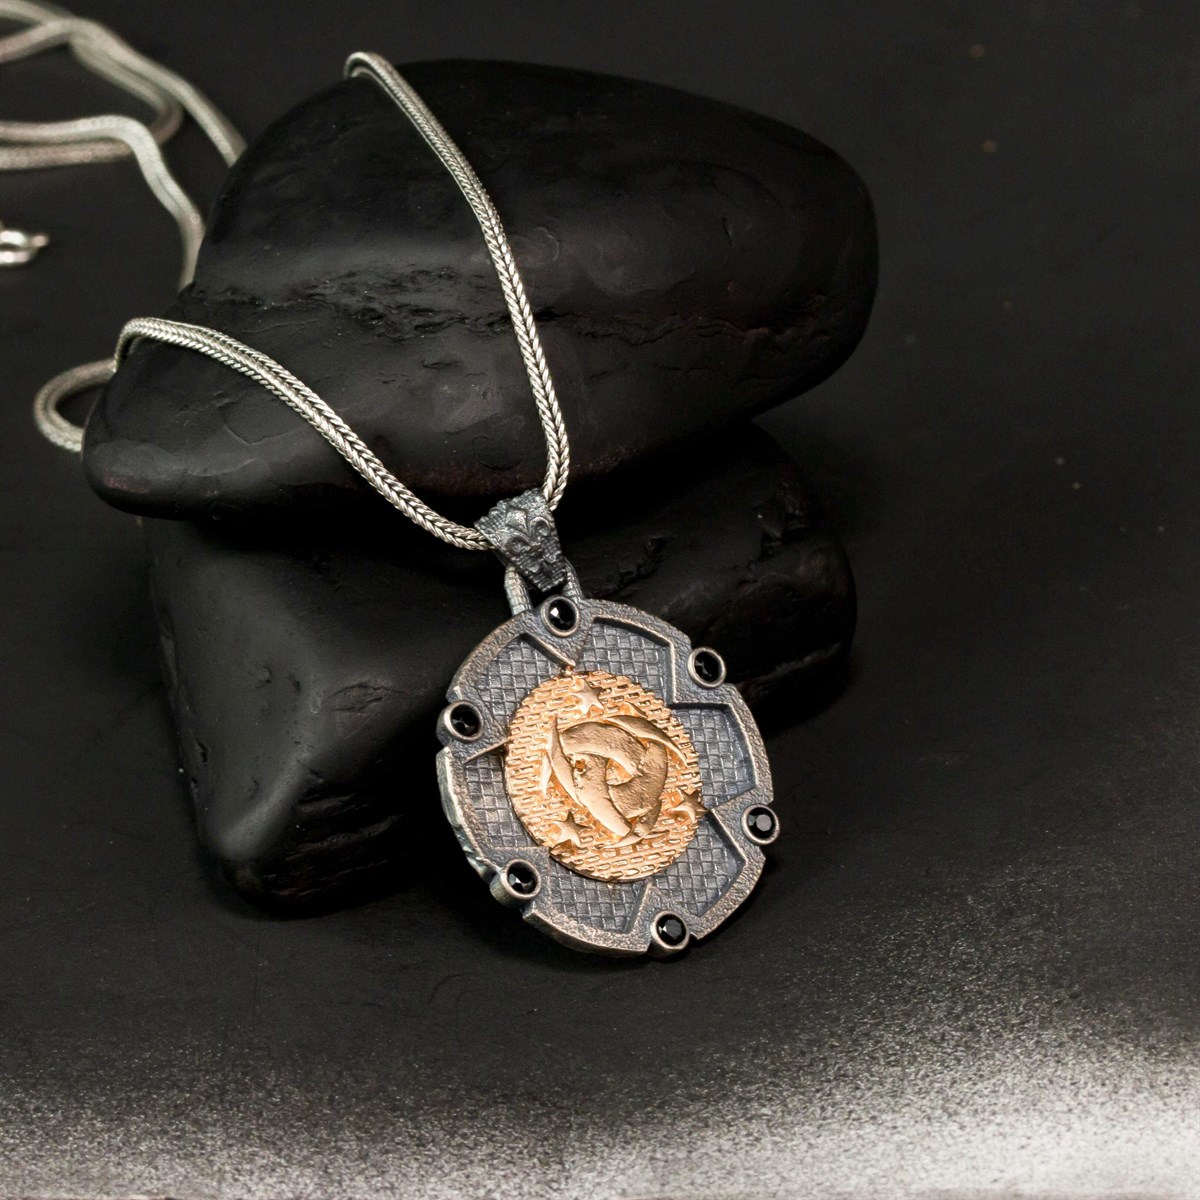 Special Design Vintage Zircon Stone Organization-I Special Silver Men's Necklace